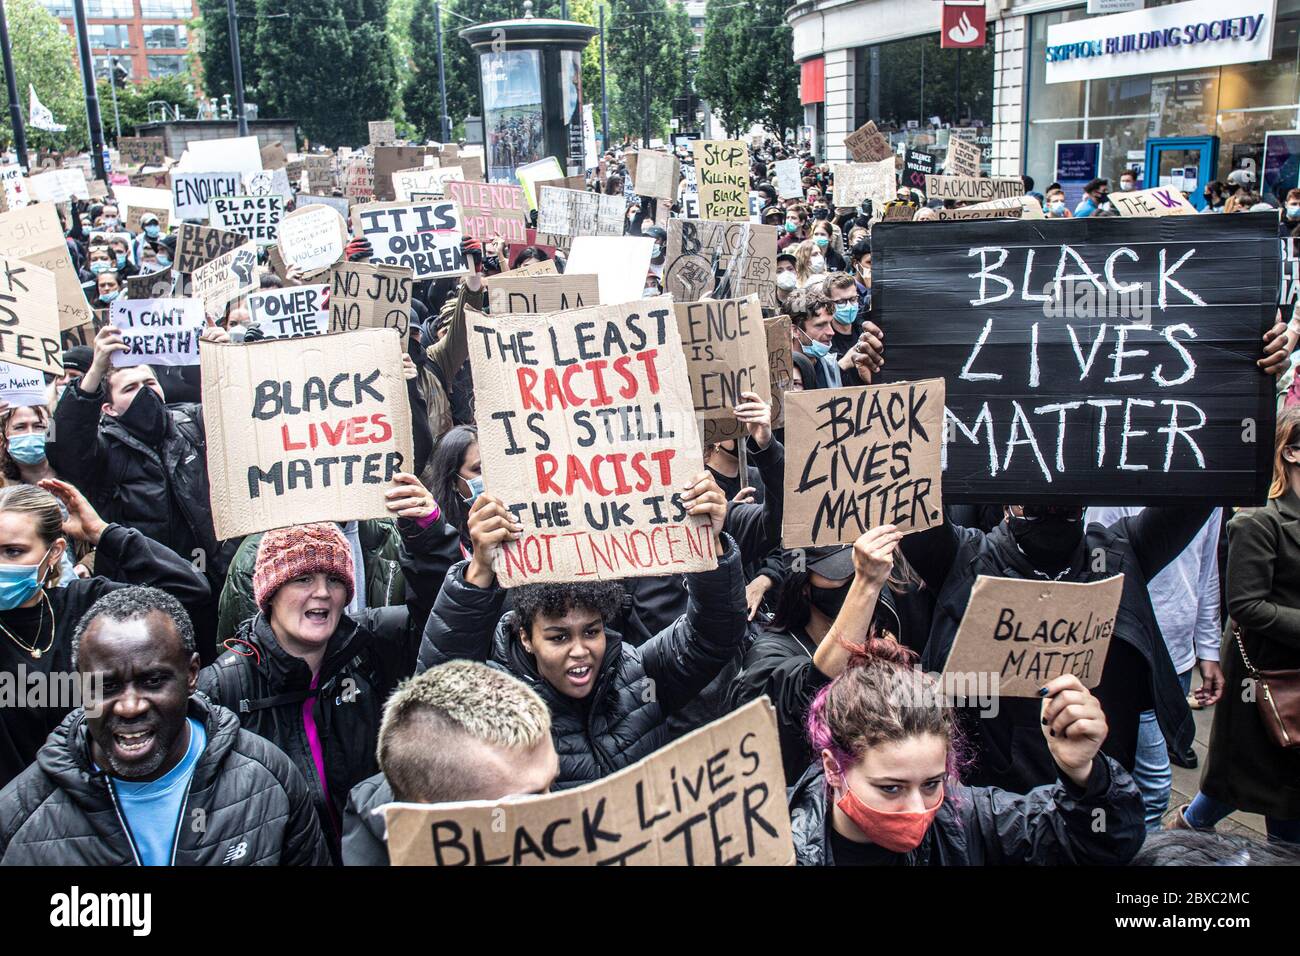 Manchester, Regno Unito. 06 giugno 2020. La protesta della materia delle vite nere a Manchester UK.migliaia della gente - la maggior parte di cui stavano portando i facemasks - si sono riuniti oggi nei giardini di Piccadilly (6 giugno). La protesta è iniziata con i manifestanti che si inginocchiano in due minuti di silenzio per onorare George Floyd. Il leader del Consiglio Richard Leese ha ringraziato i manifestanti per il loro "comportamento esemplare", ma ha esortato alla cautela dopo Covid-19 e ha affermato che la distanza sociale rimane vitale. La protesta di oggi è stata una delle tre che si terrà a Manchester nel corso del fine settimana come parte del movimento Black Lives Matter. Credit: Gary Roberts/Alamy Live New Foto Stock